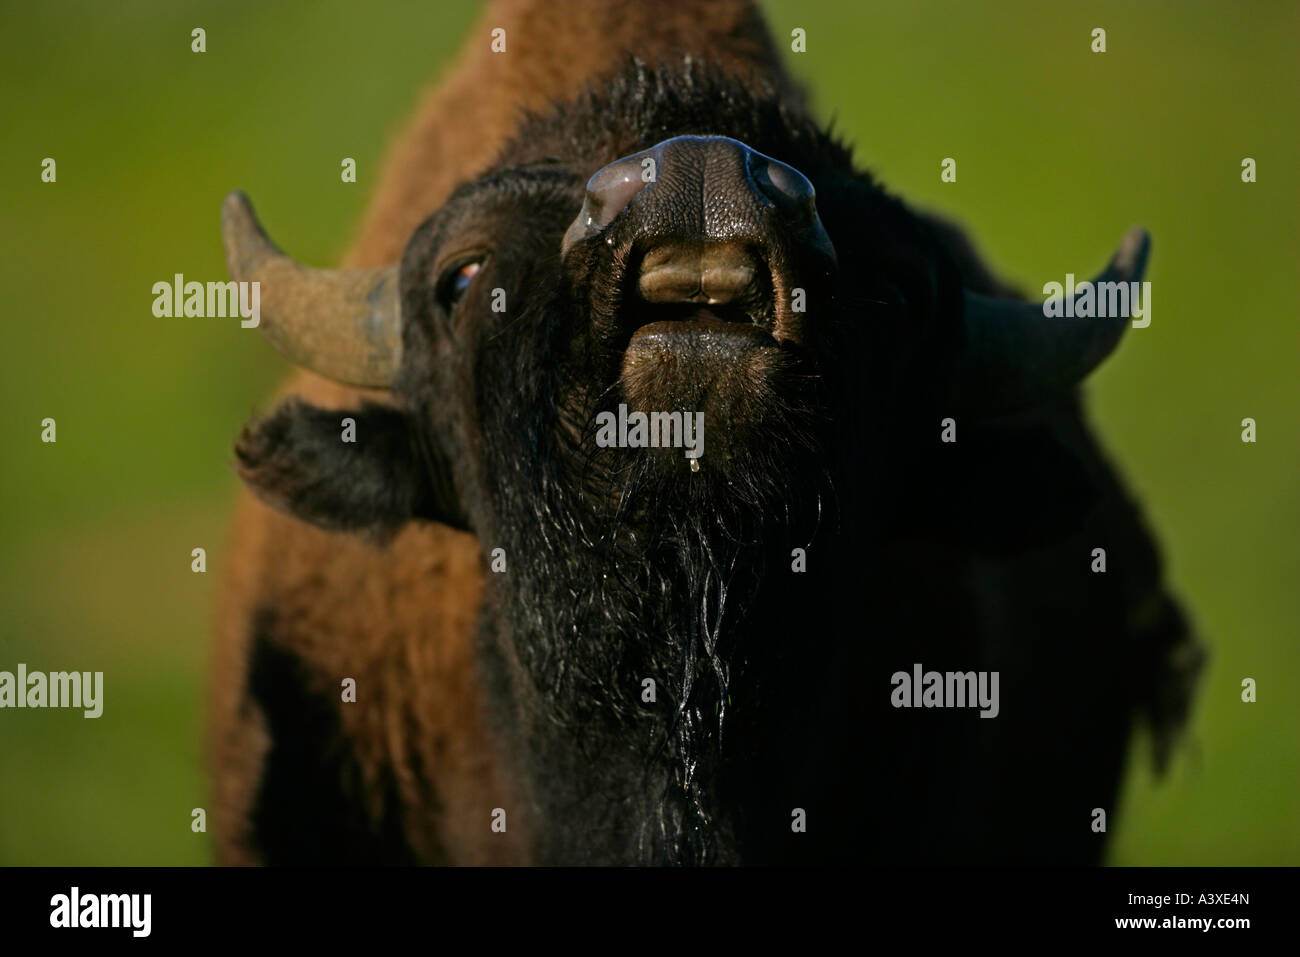 Bison Bison bison Wyoming Male flehmen behaviour Stock Photo